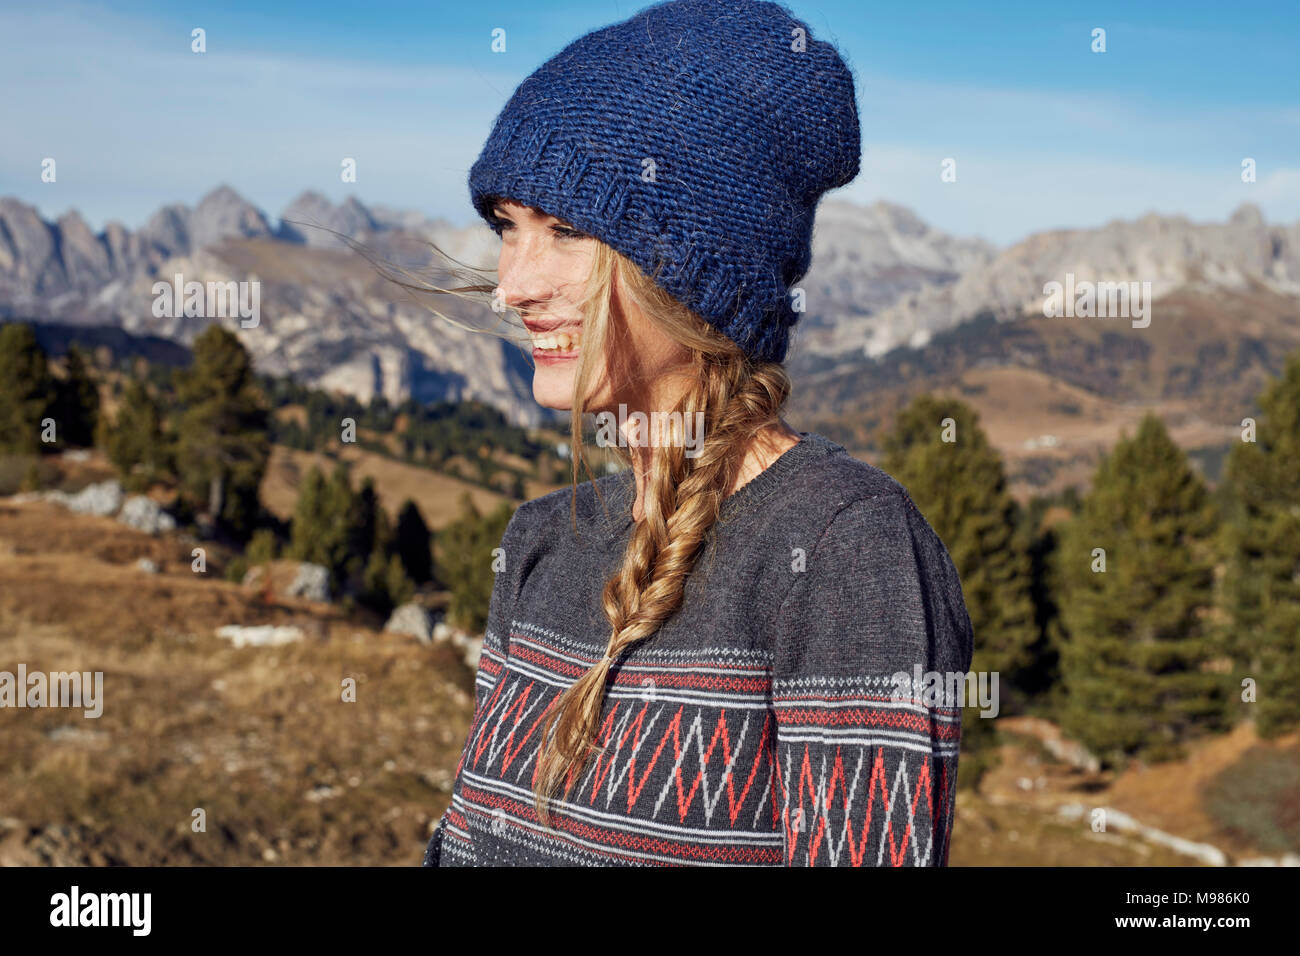 Portrait of happy young woman hiking dans les montagnes Banque D'Images